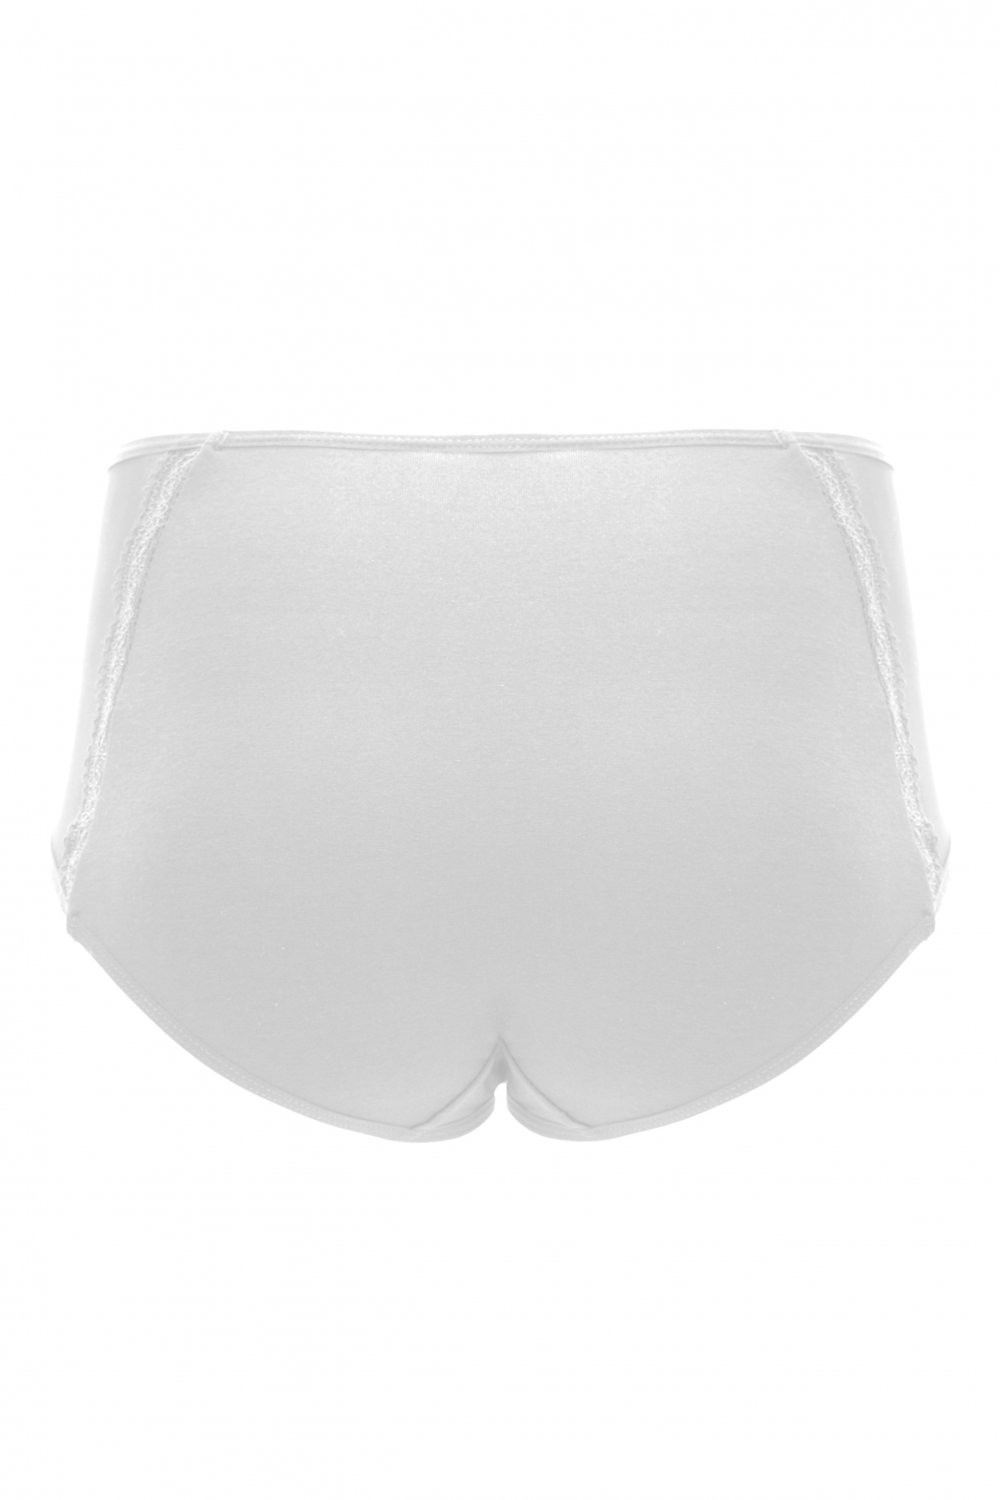 Dámské kalhotky white model 16192839 - Emili Barva: Bílá, Velikost: M